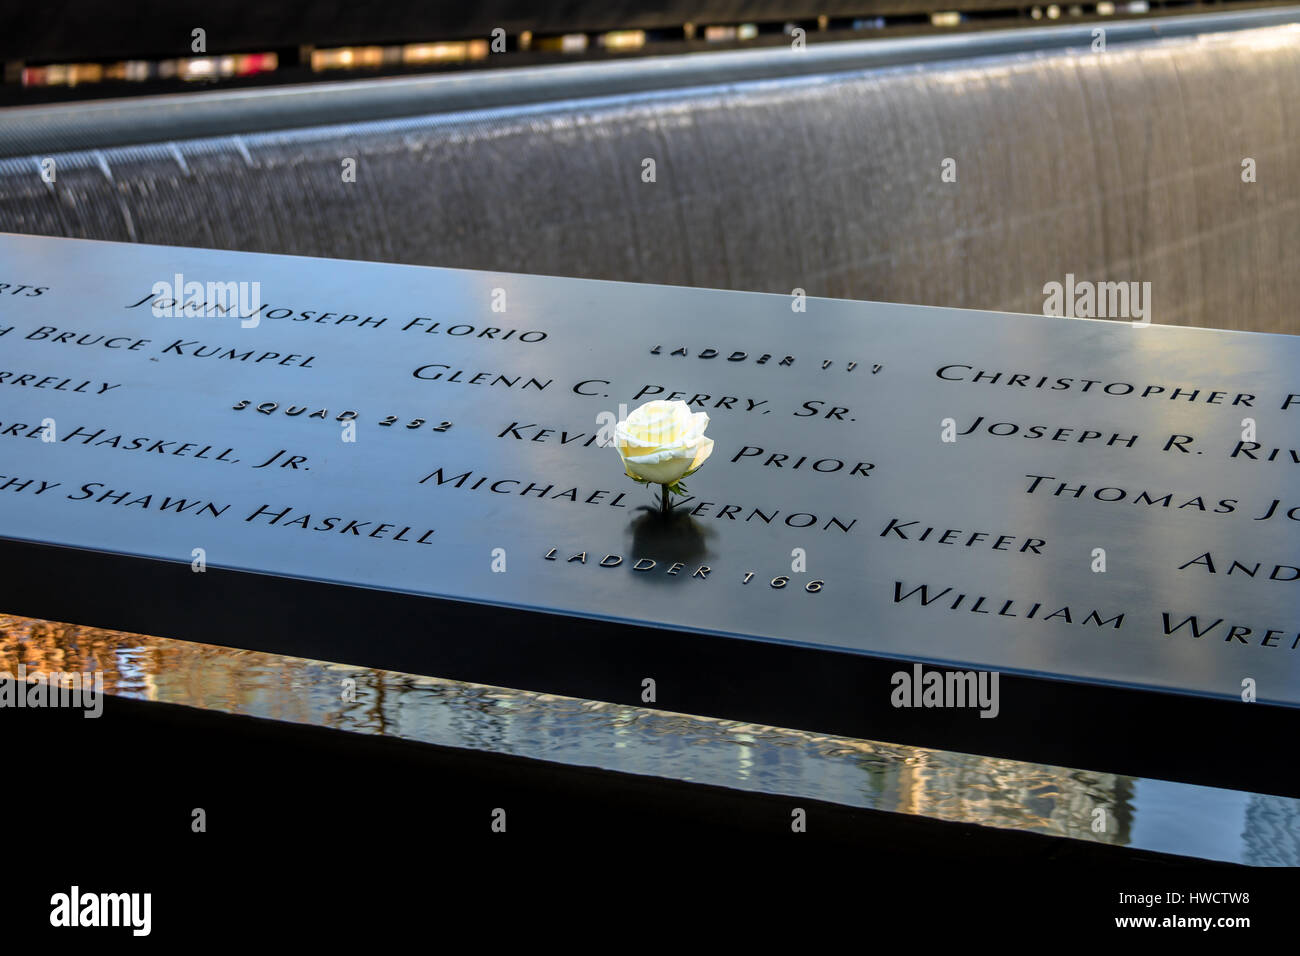 Compleanno rosa bianca a sinistra vicino a nome della vittima incisa sul parapetto in bronzo di 9/11 Memorial al World Trade Center Ground Zero - New York, Stati Uniti d'America Foto Stock